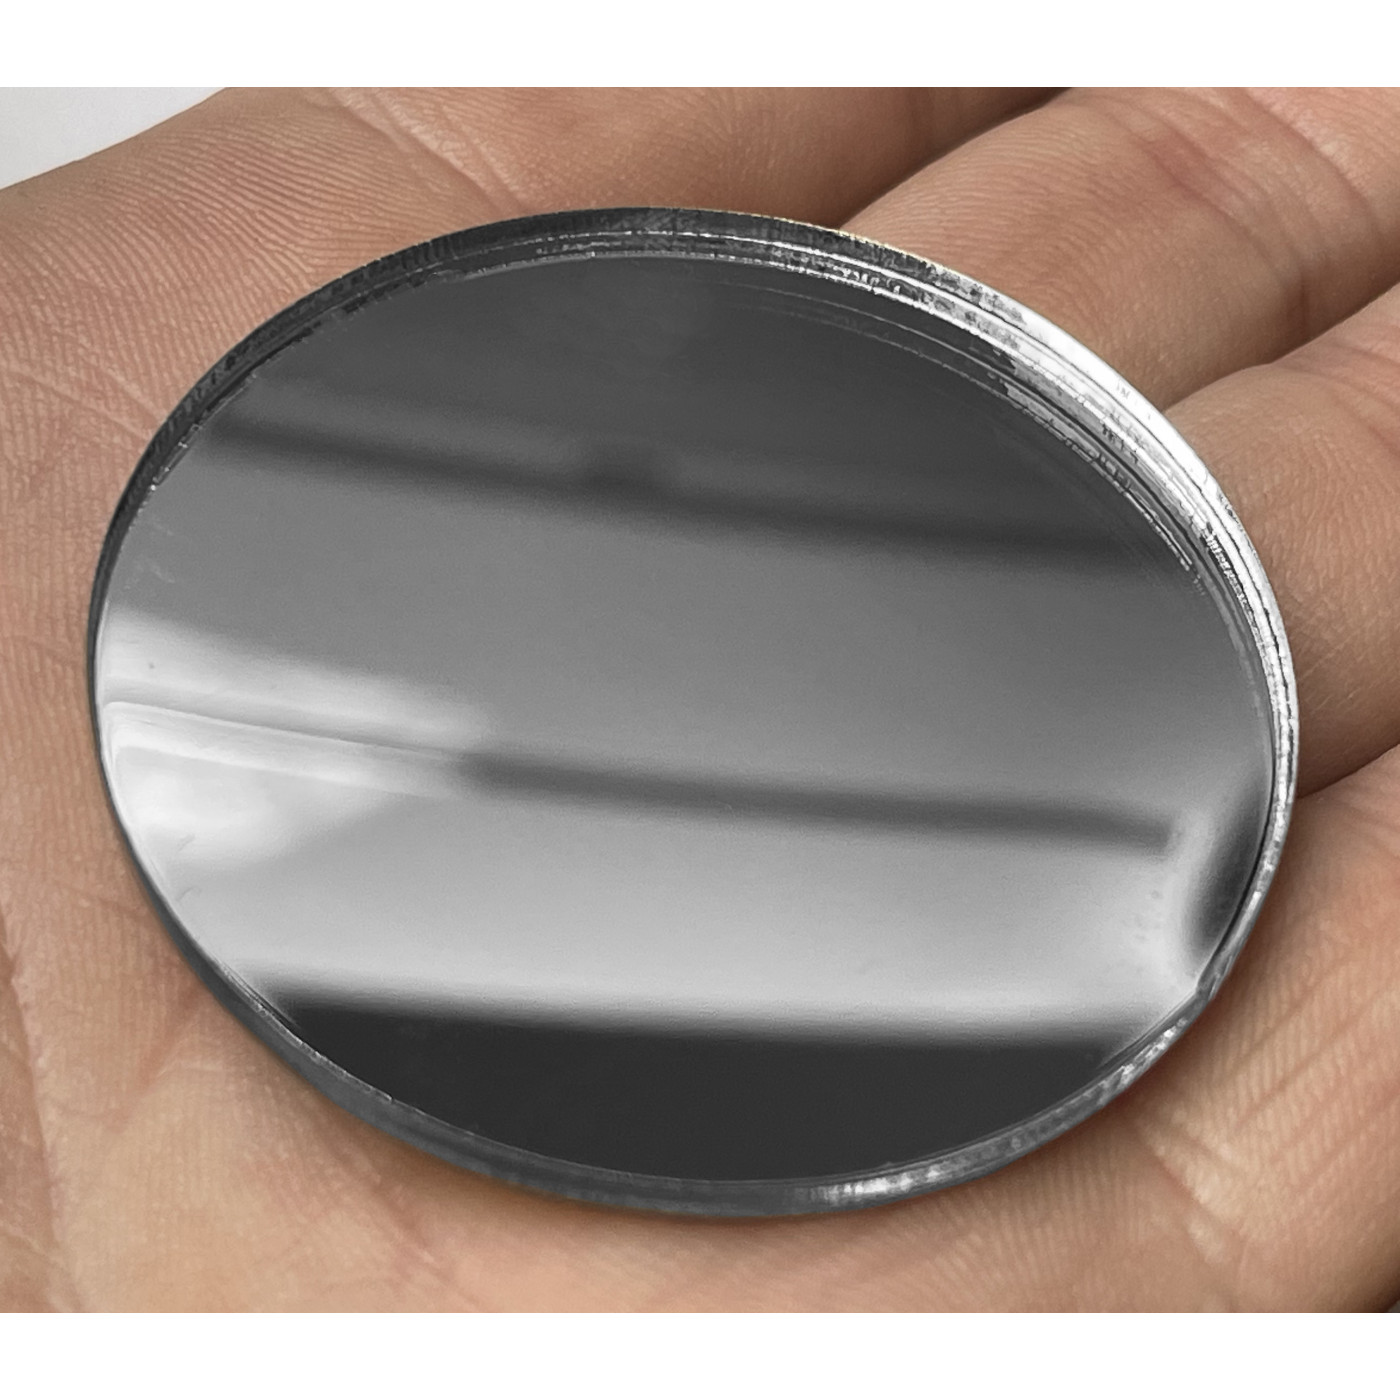 Círculo/elipse espelhada (tamanho e cor à sua escolha, 3 mm de